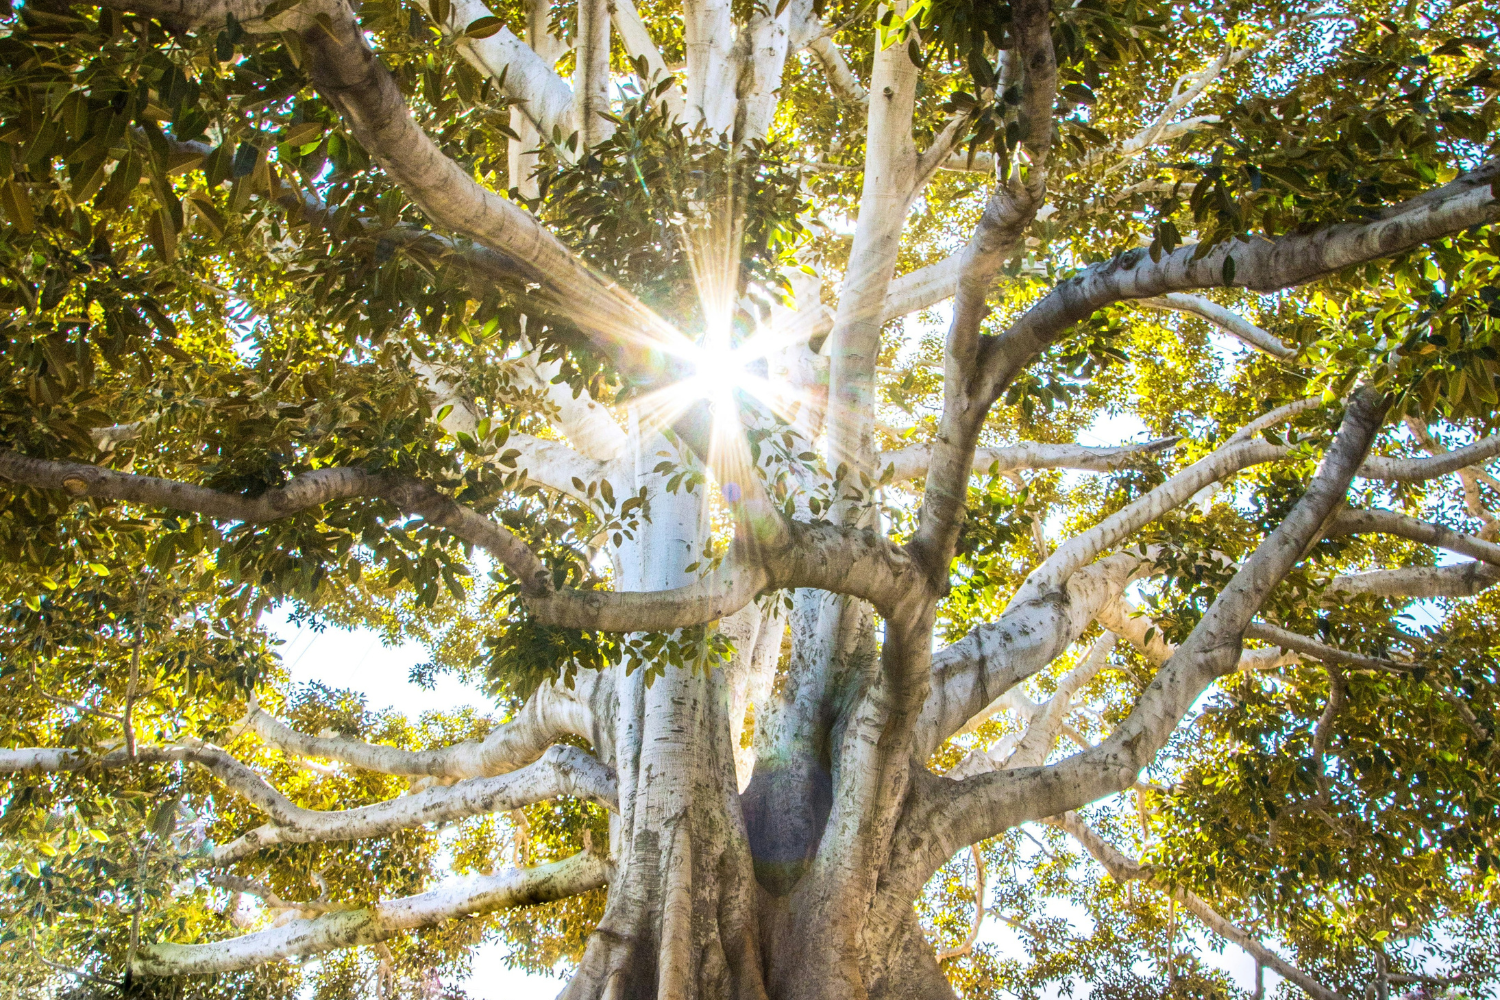 Imagem de uma árvore majestosa vista de baixo, com muitos galhos grossos e folhas verdes. A luz do sol brilha através das folhas, criando um efeito de raios de luz que se espalham em várias direções. A árvore tem um tronco robusto e várias ramificações que se estendem amplamente, criando uma cobertura densa de folhas. promoções